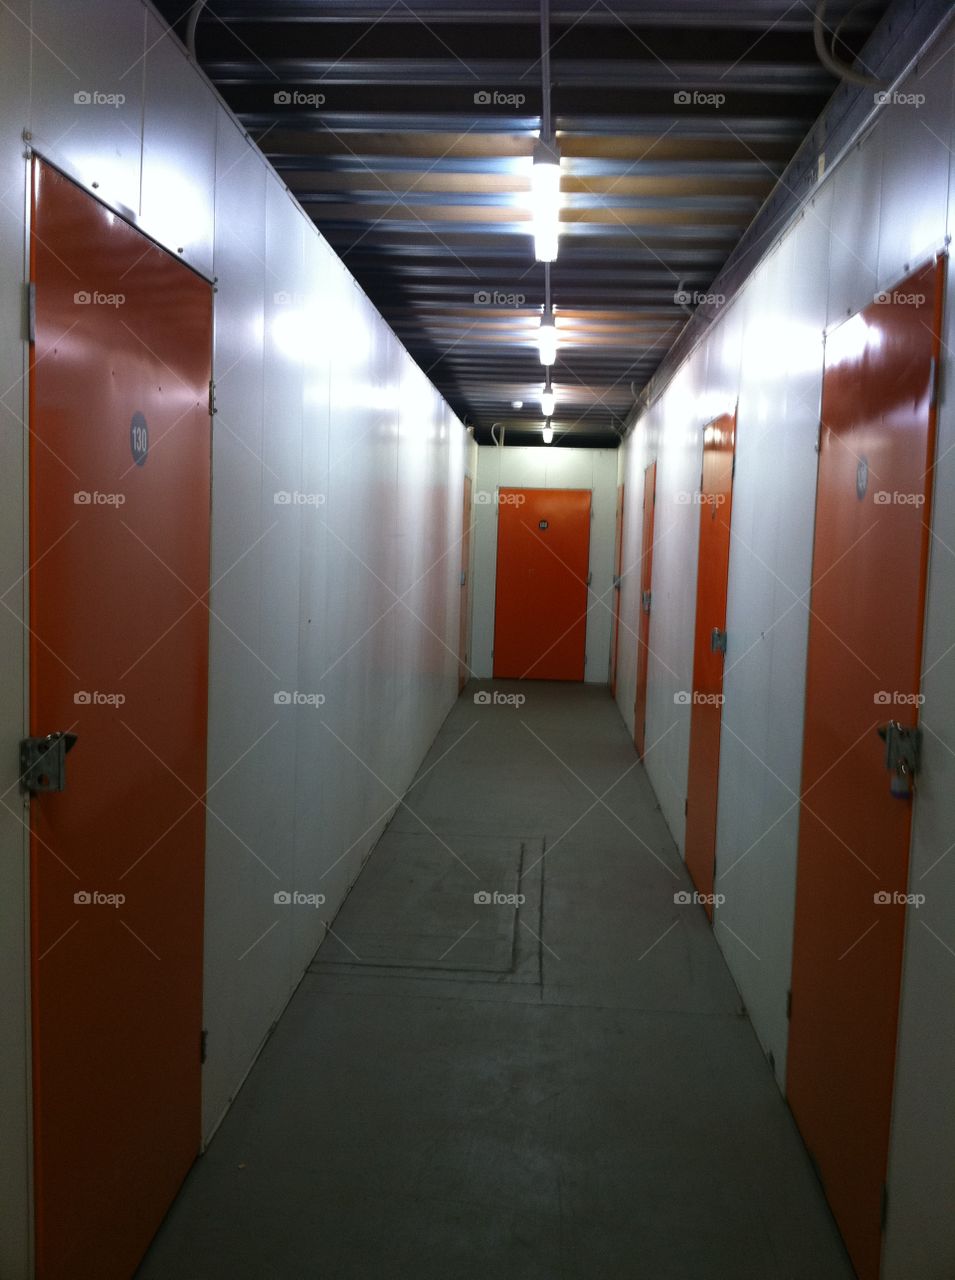 Doors at Storage Facility